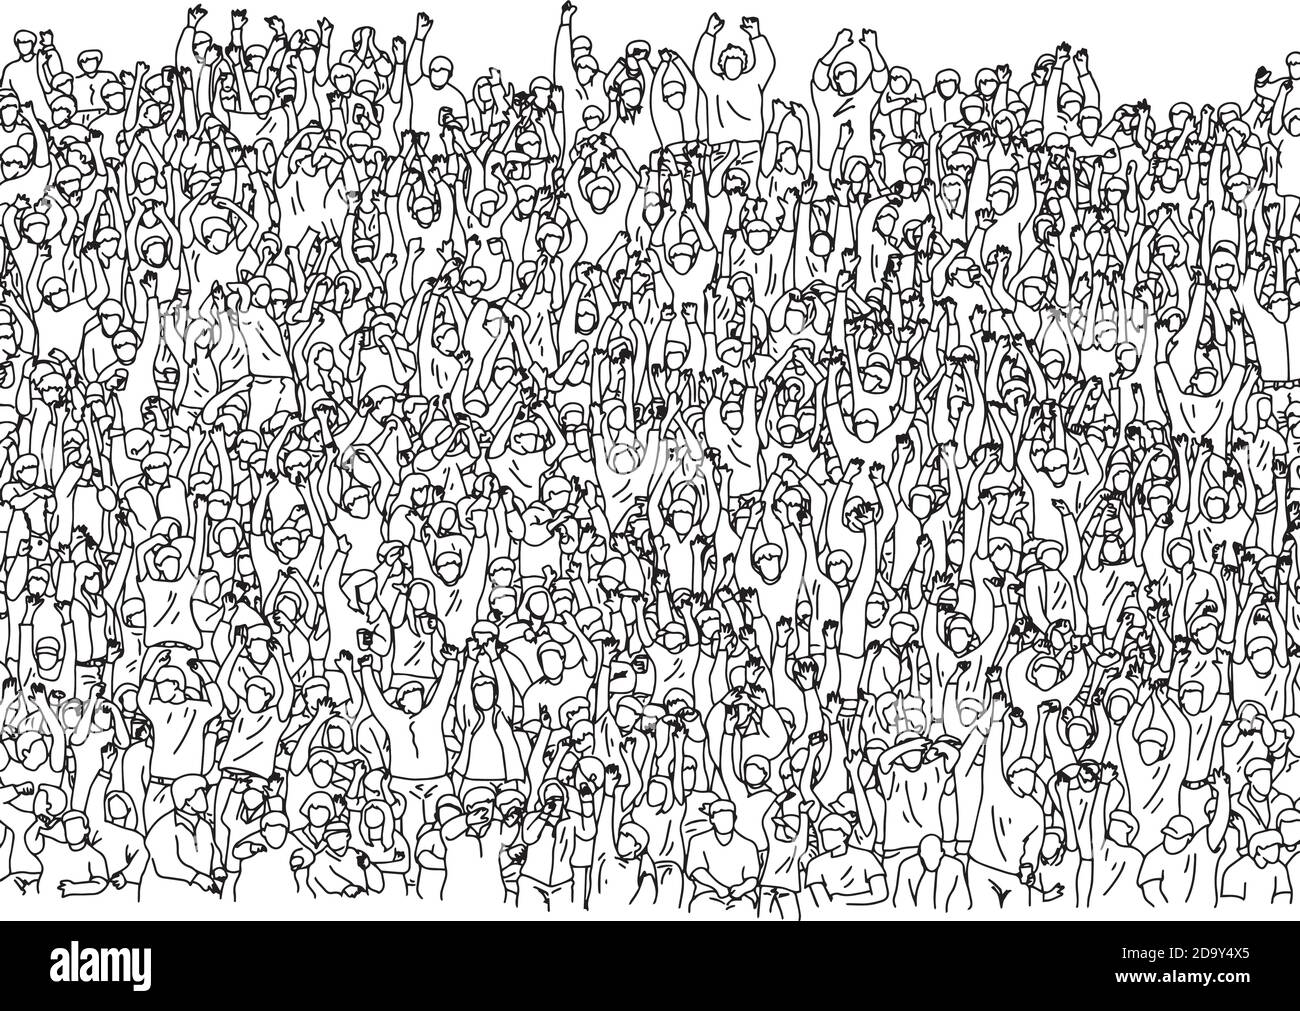 Große Gruppe von Menschen auf Stadion Vektor Illustration Skizze gedrängt doodle handgezeichnet mit schwarzen Linien isoliert auf weißem Hintergrund Stock Vektor